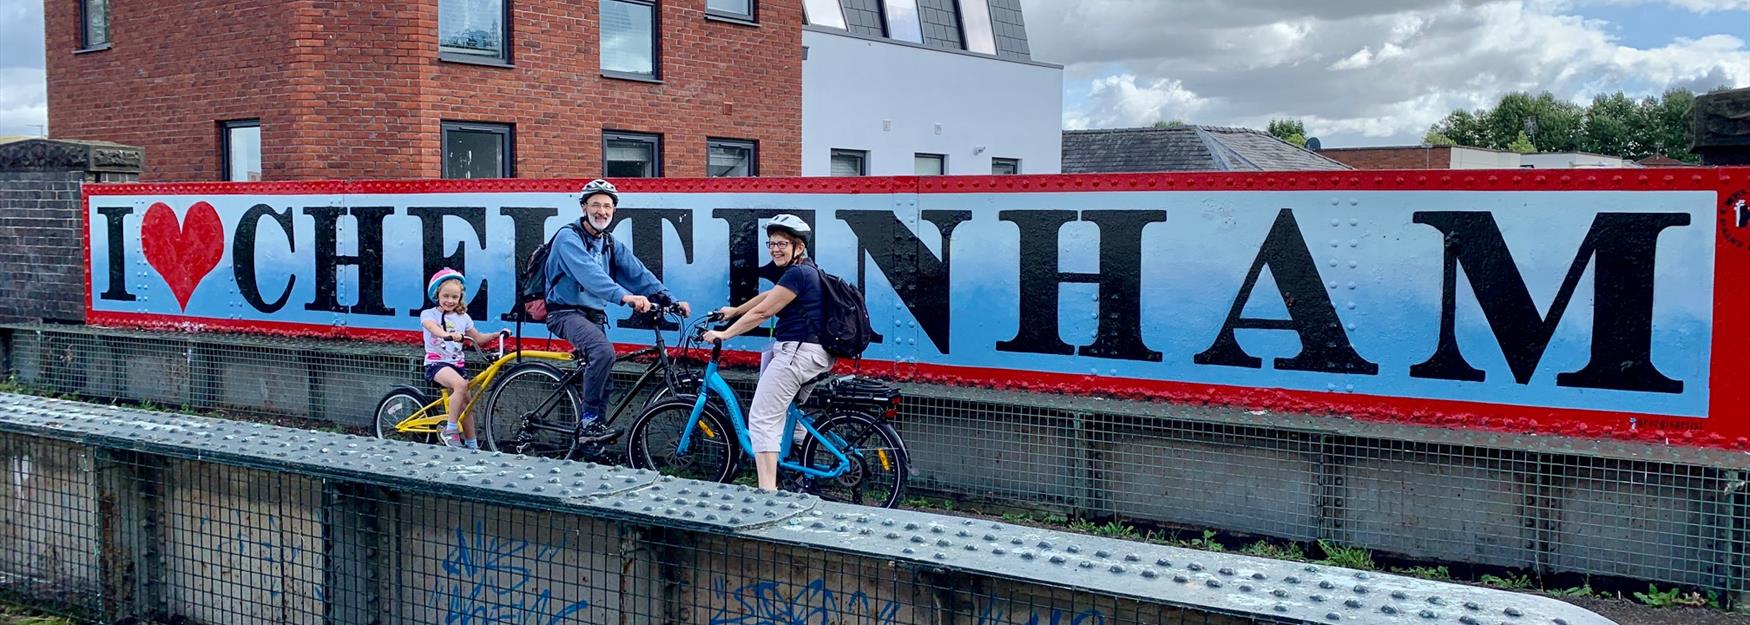 Family on bikes in front of I love Cheltenham street art